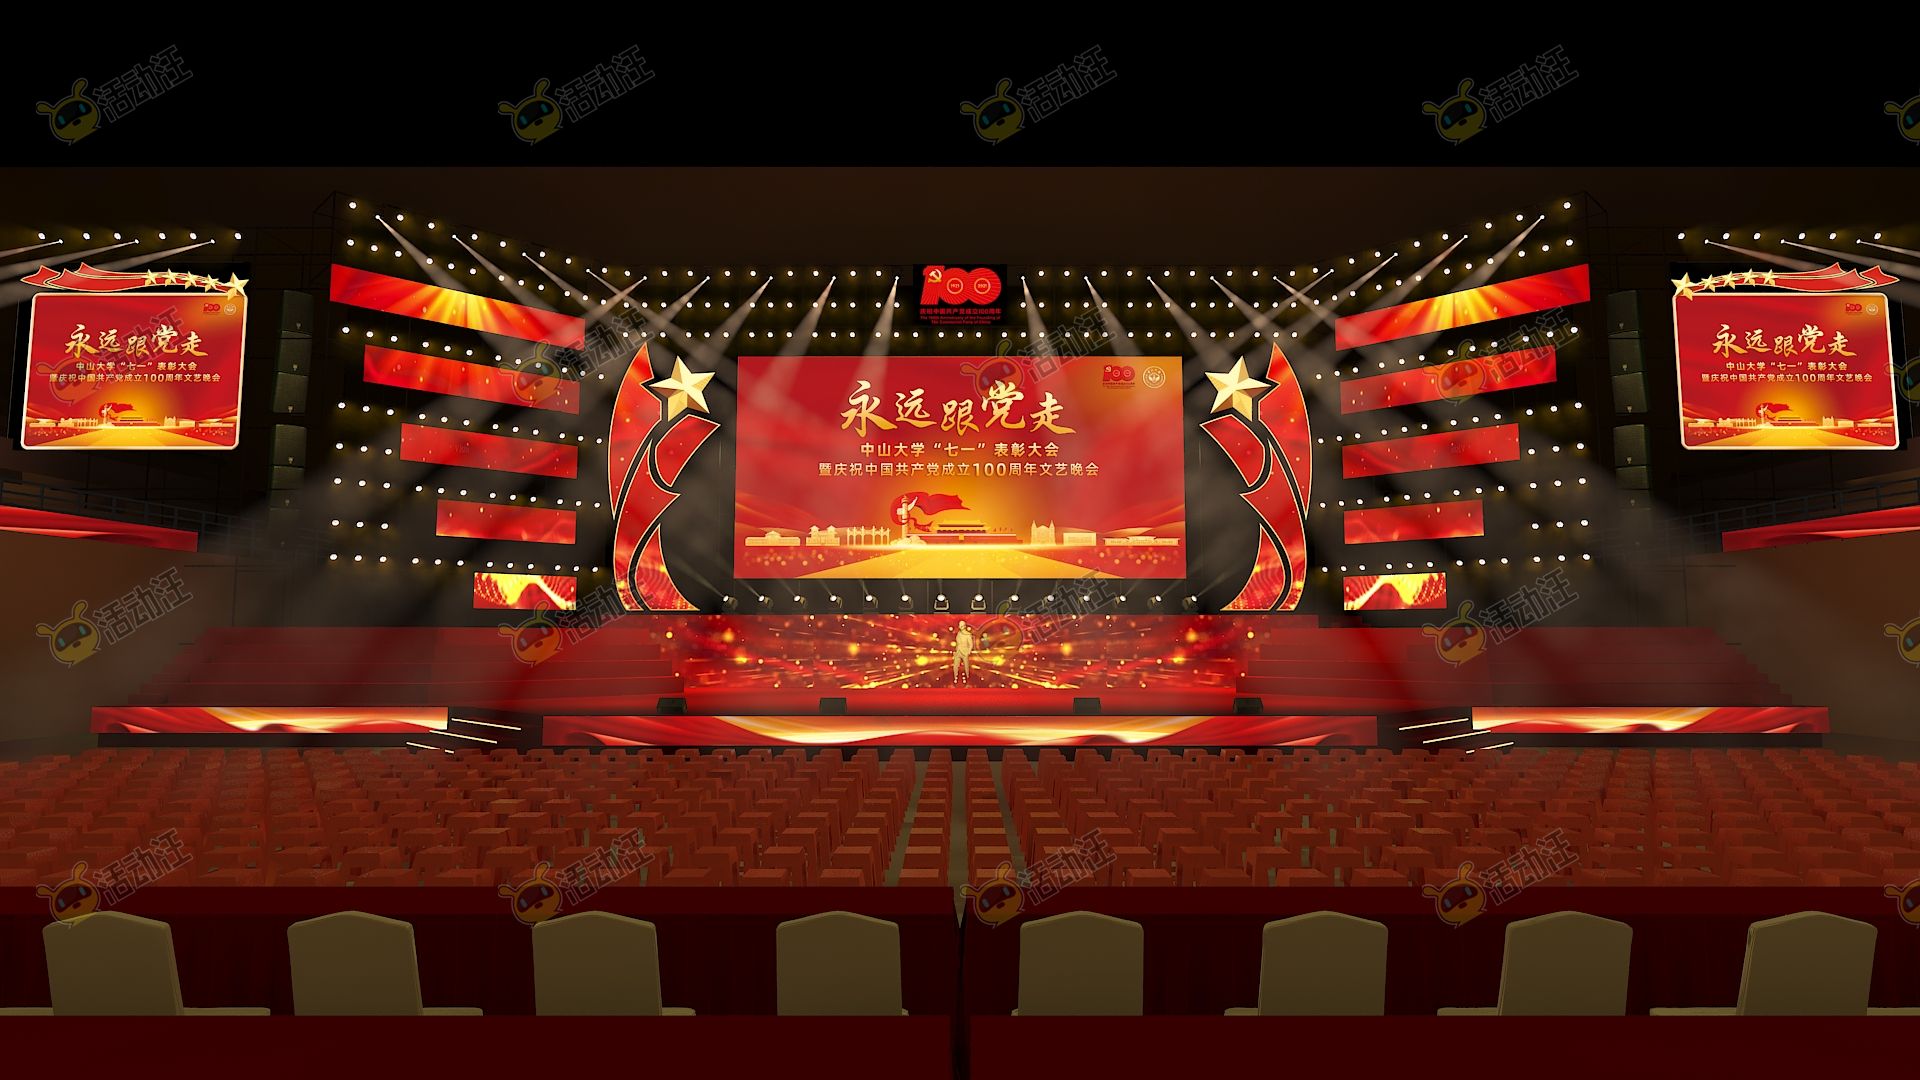 梦幻中式某高校建党100周年活动体育馆舞美庆典舞台